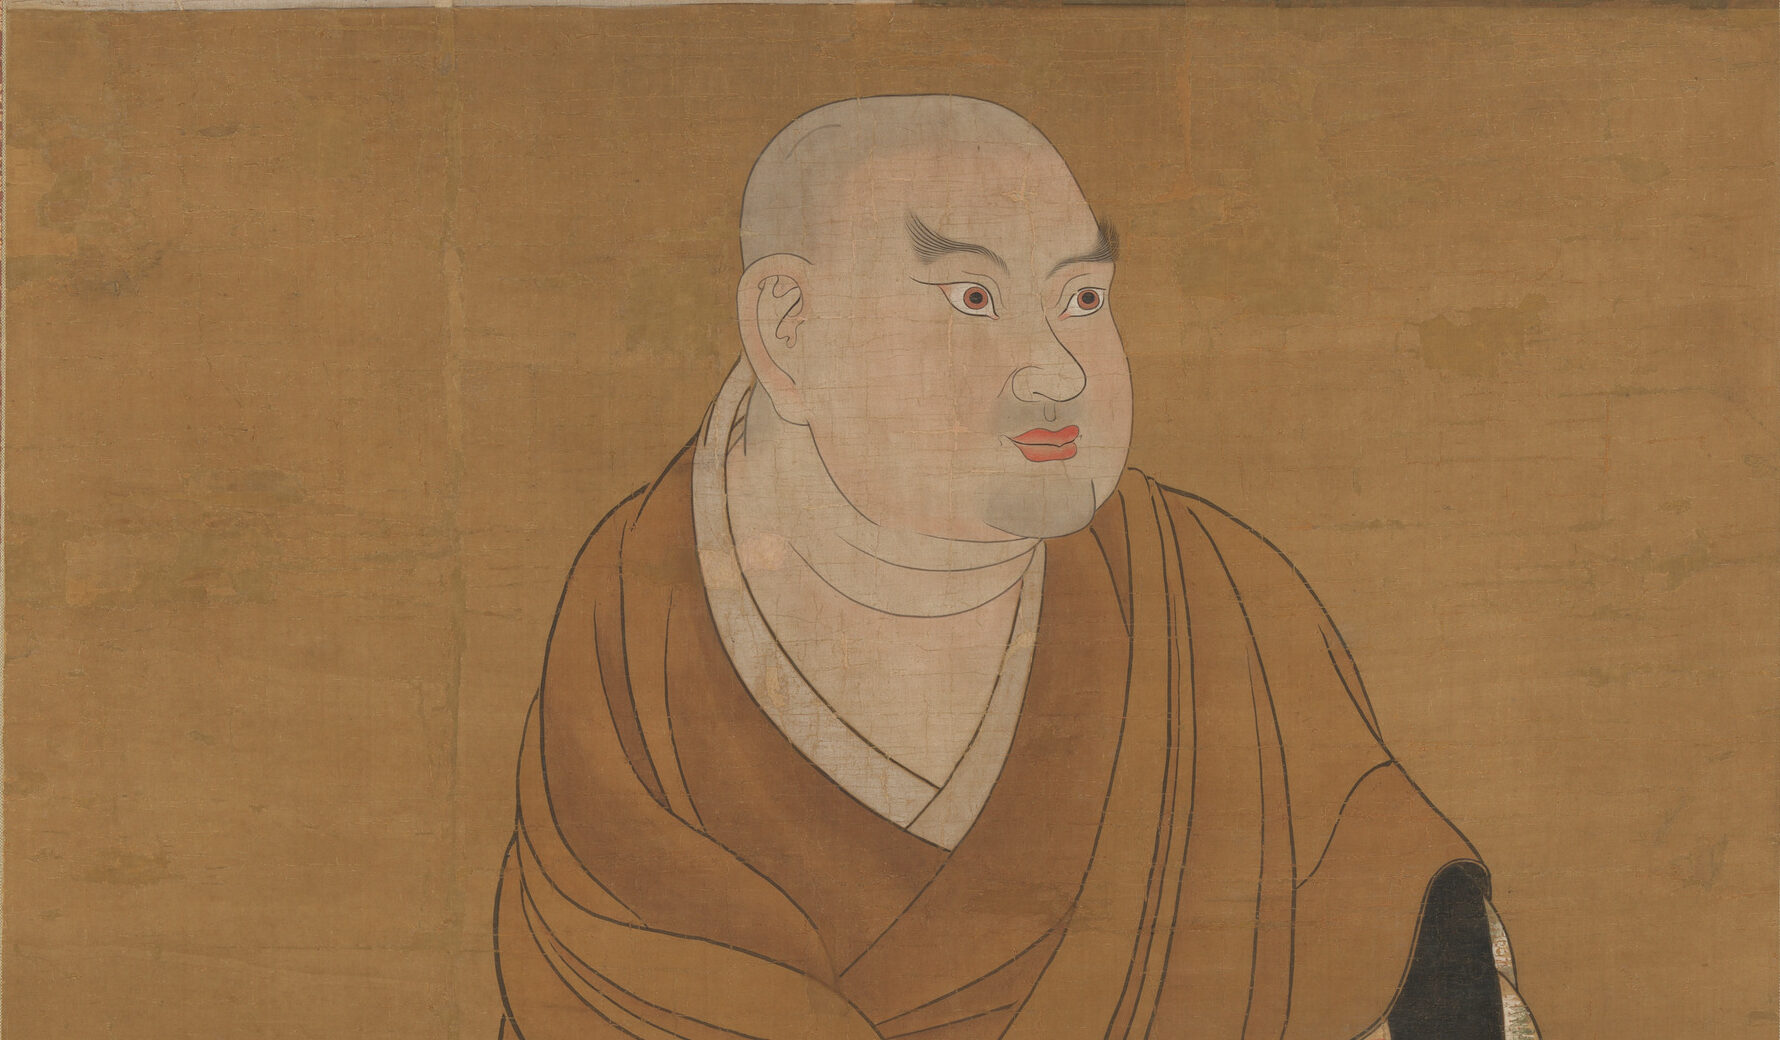 Kamakura period, an introduction